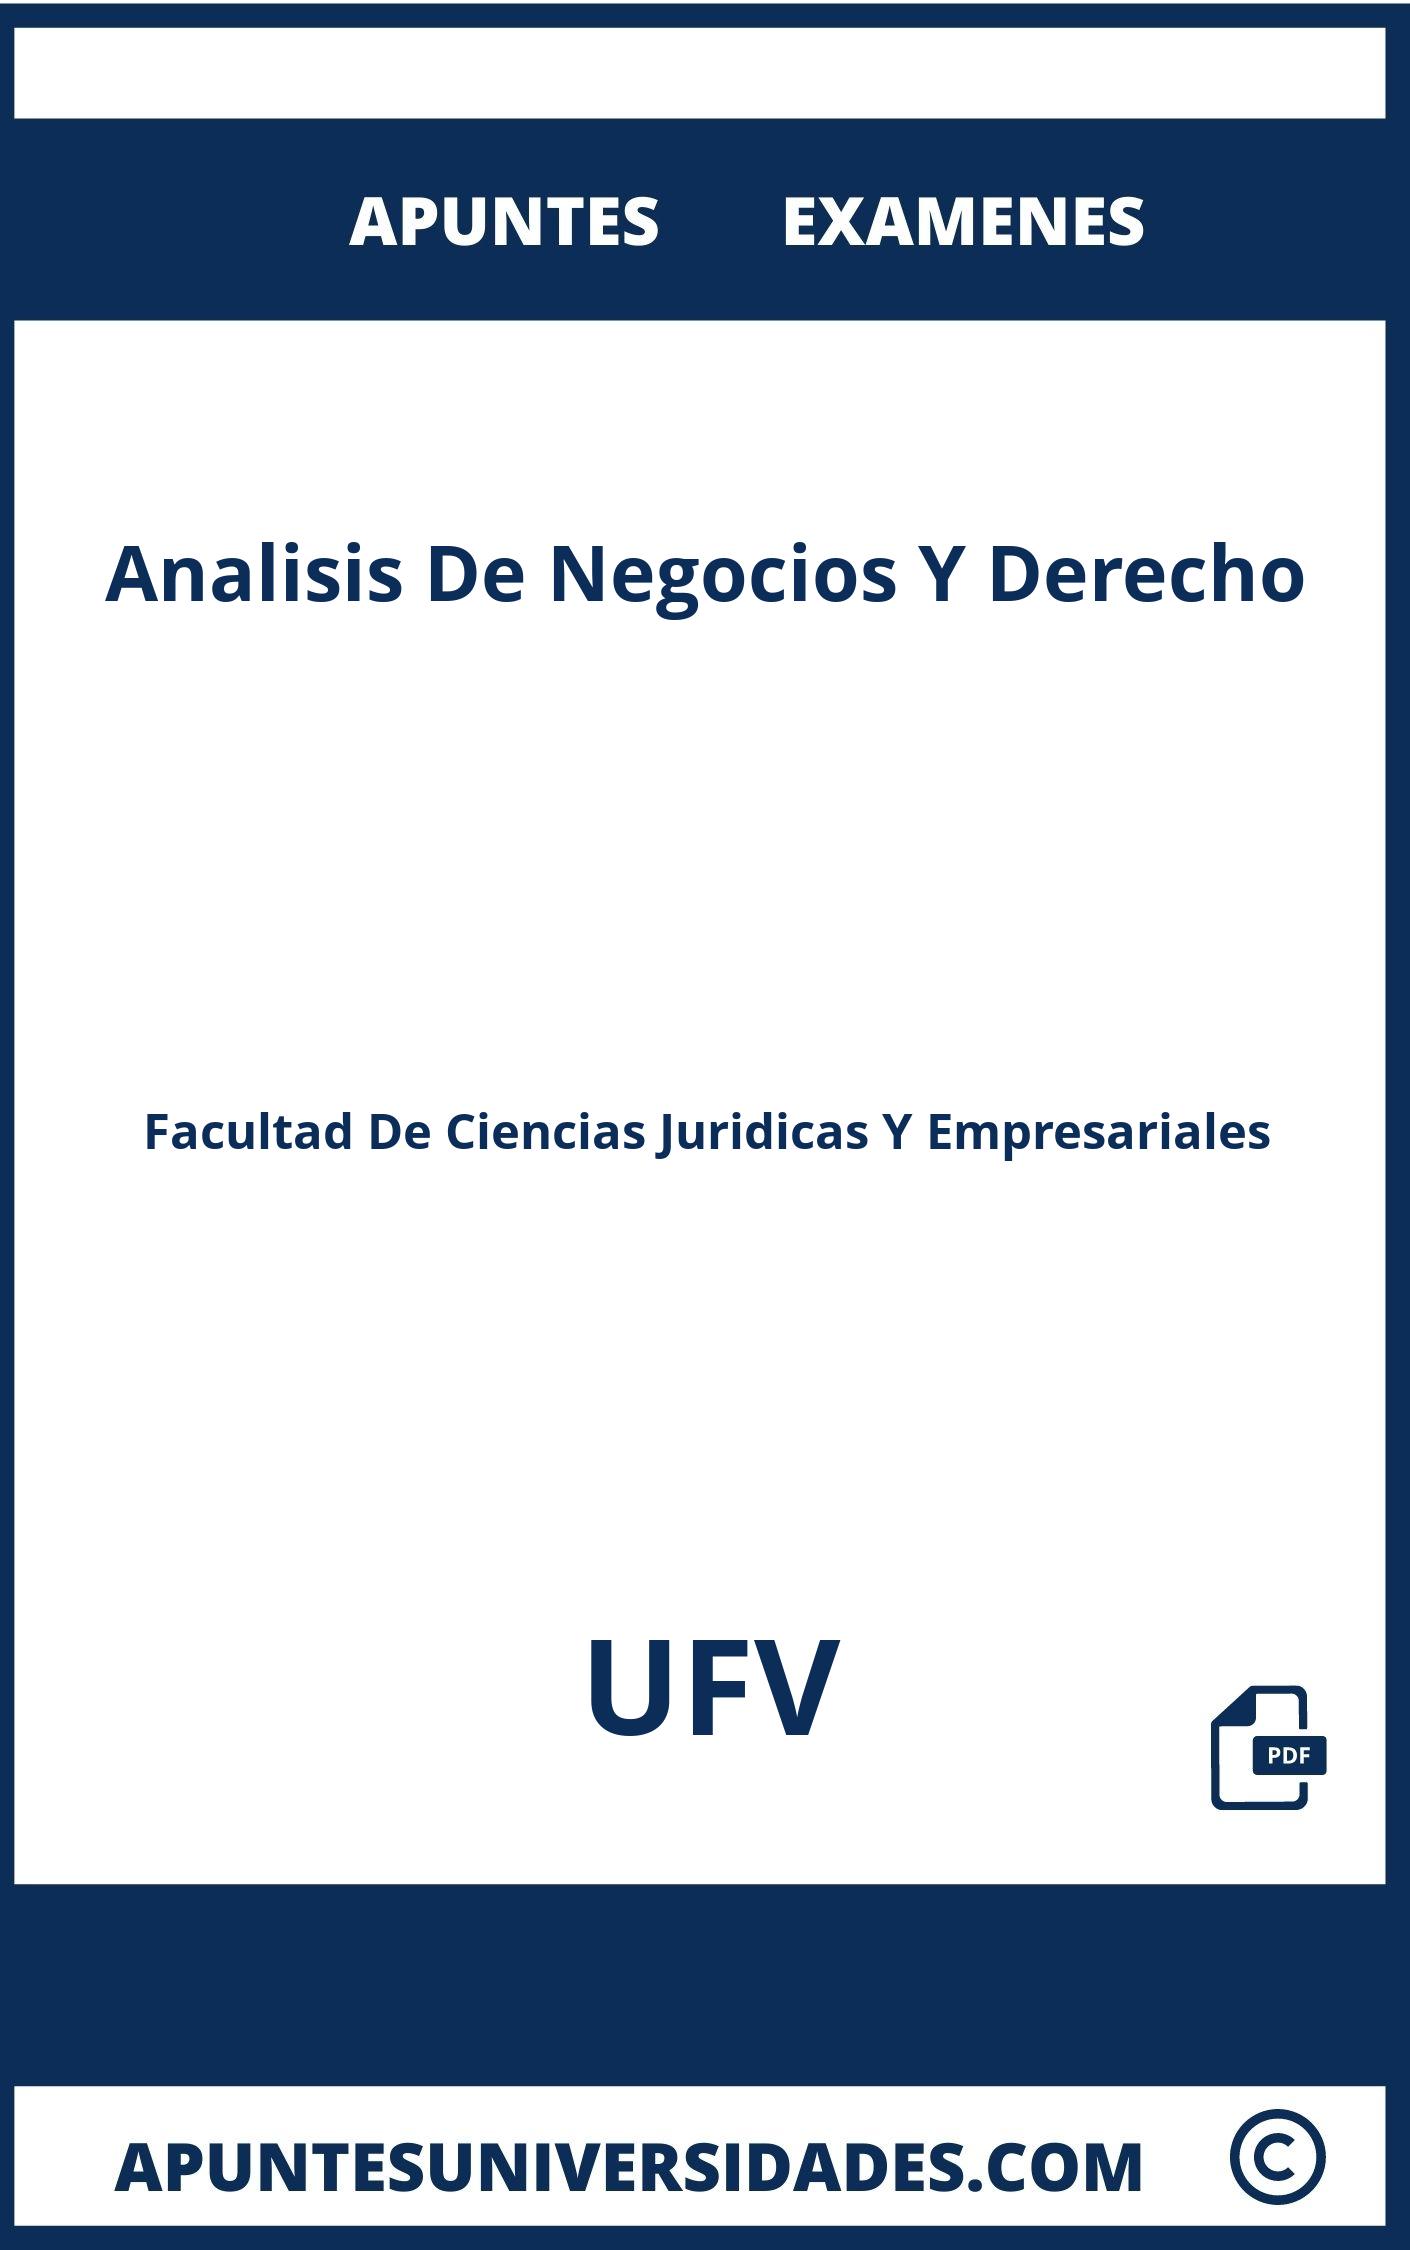 Examenes Apuntes Analisis De Negocios Y Derecho UFV